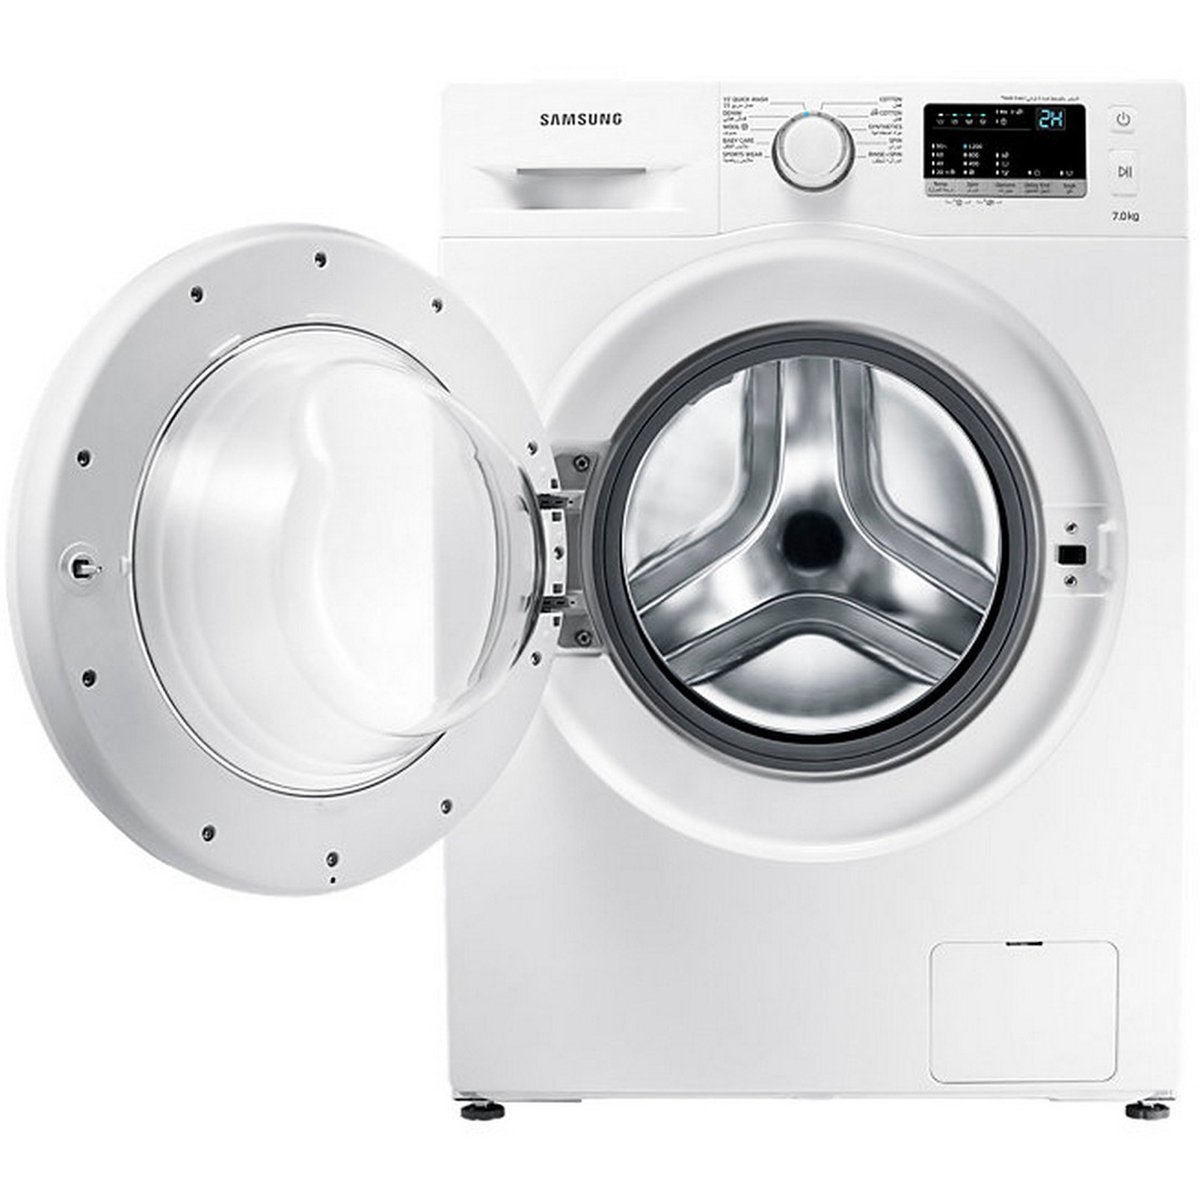 Samsung Front Load Washing Machine WW70J3280KW 7Kg